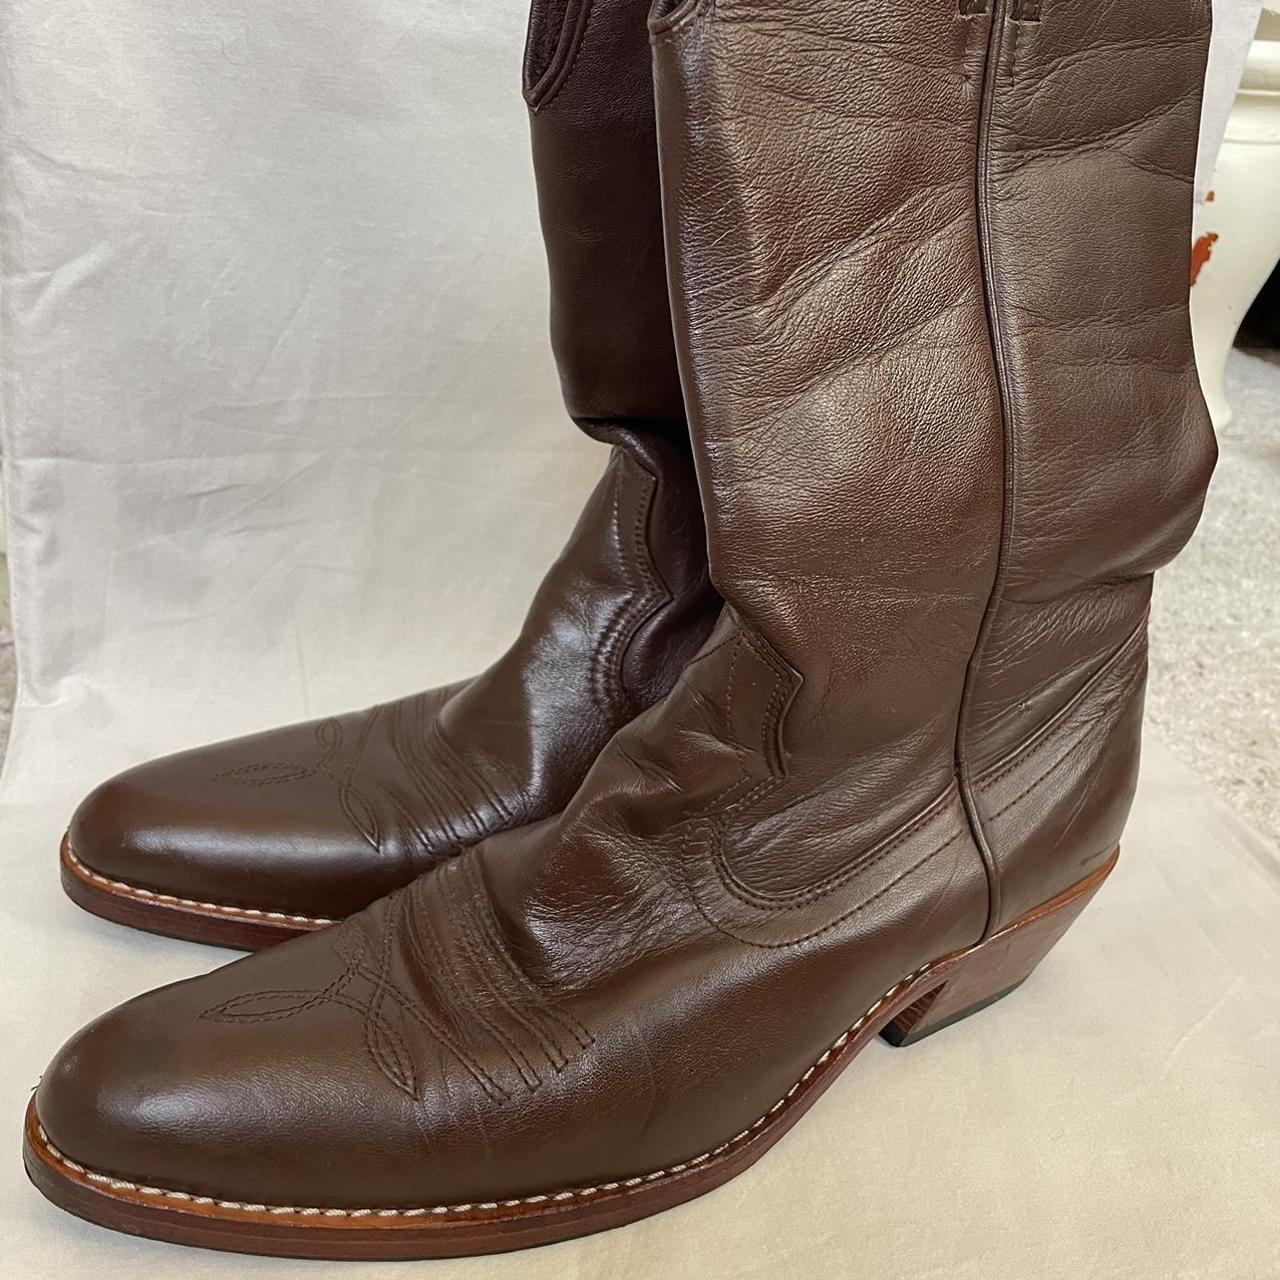 Vintage brown cowboy boots 💙 Rare Australian... - Depop